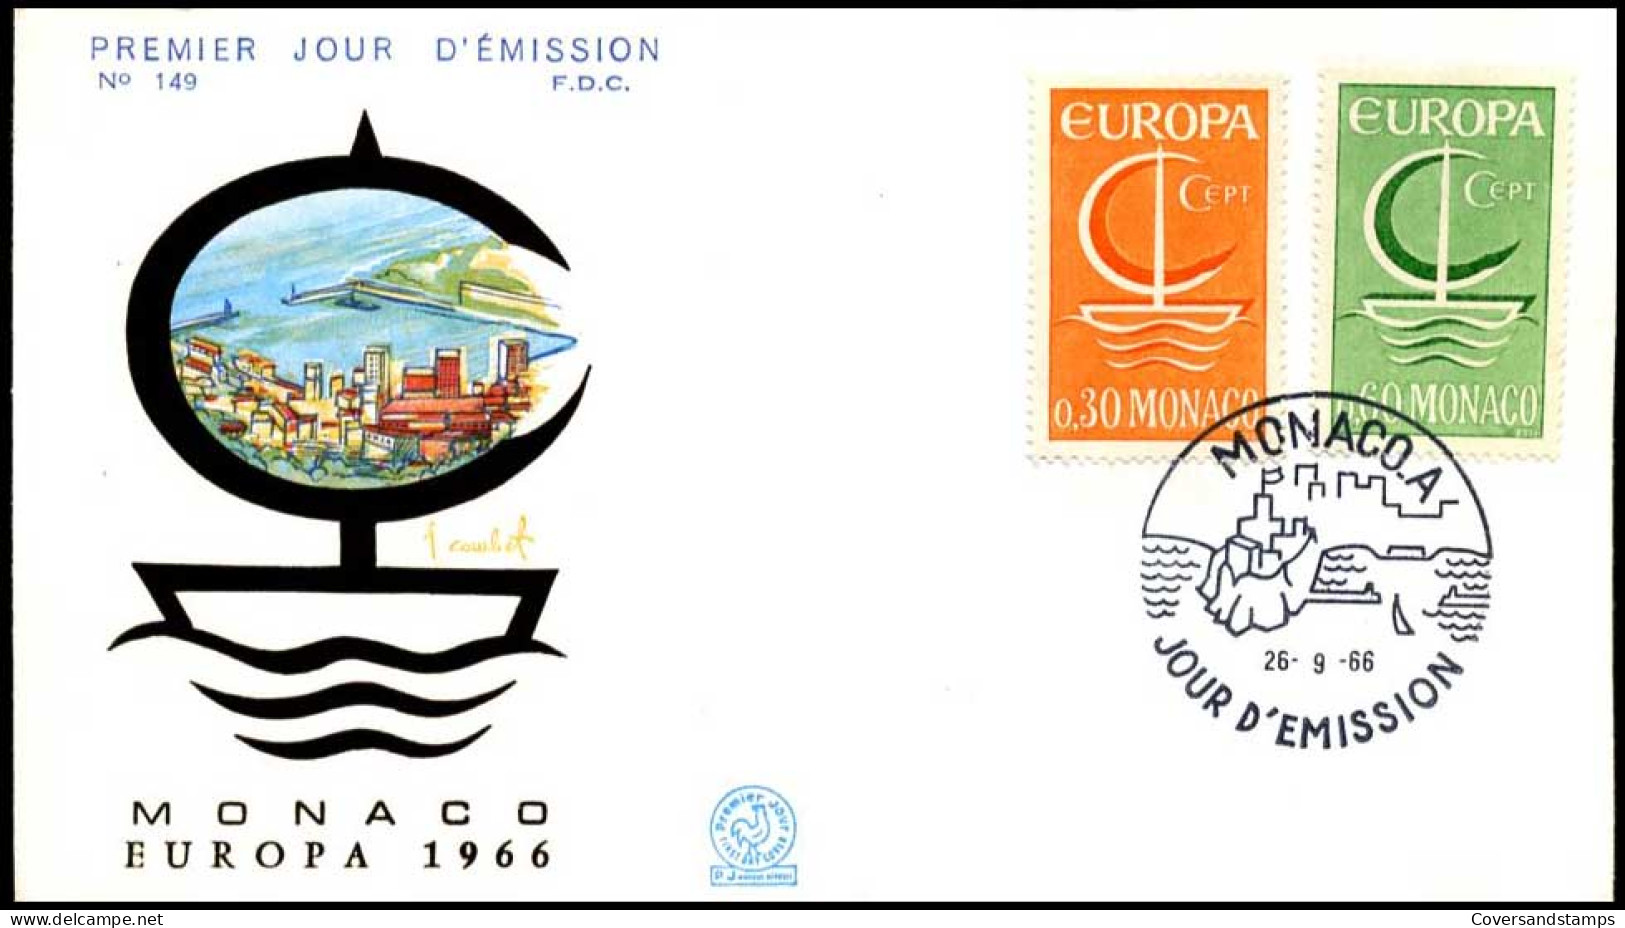  Monaco - FDC - Europa CEPT 1966 - 1966